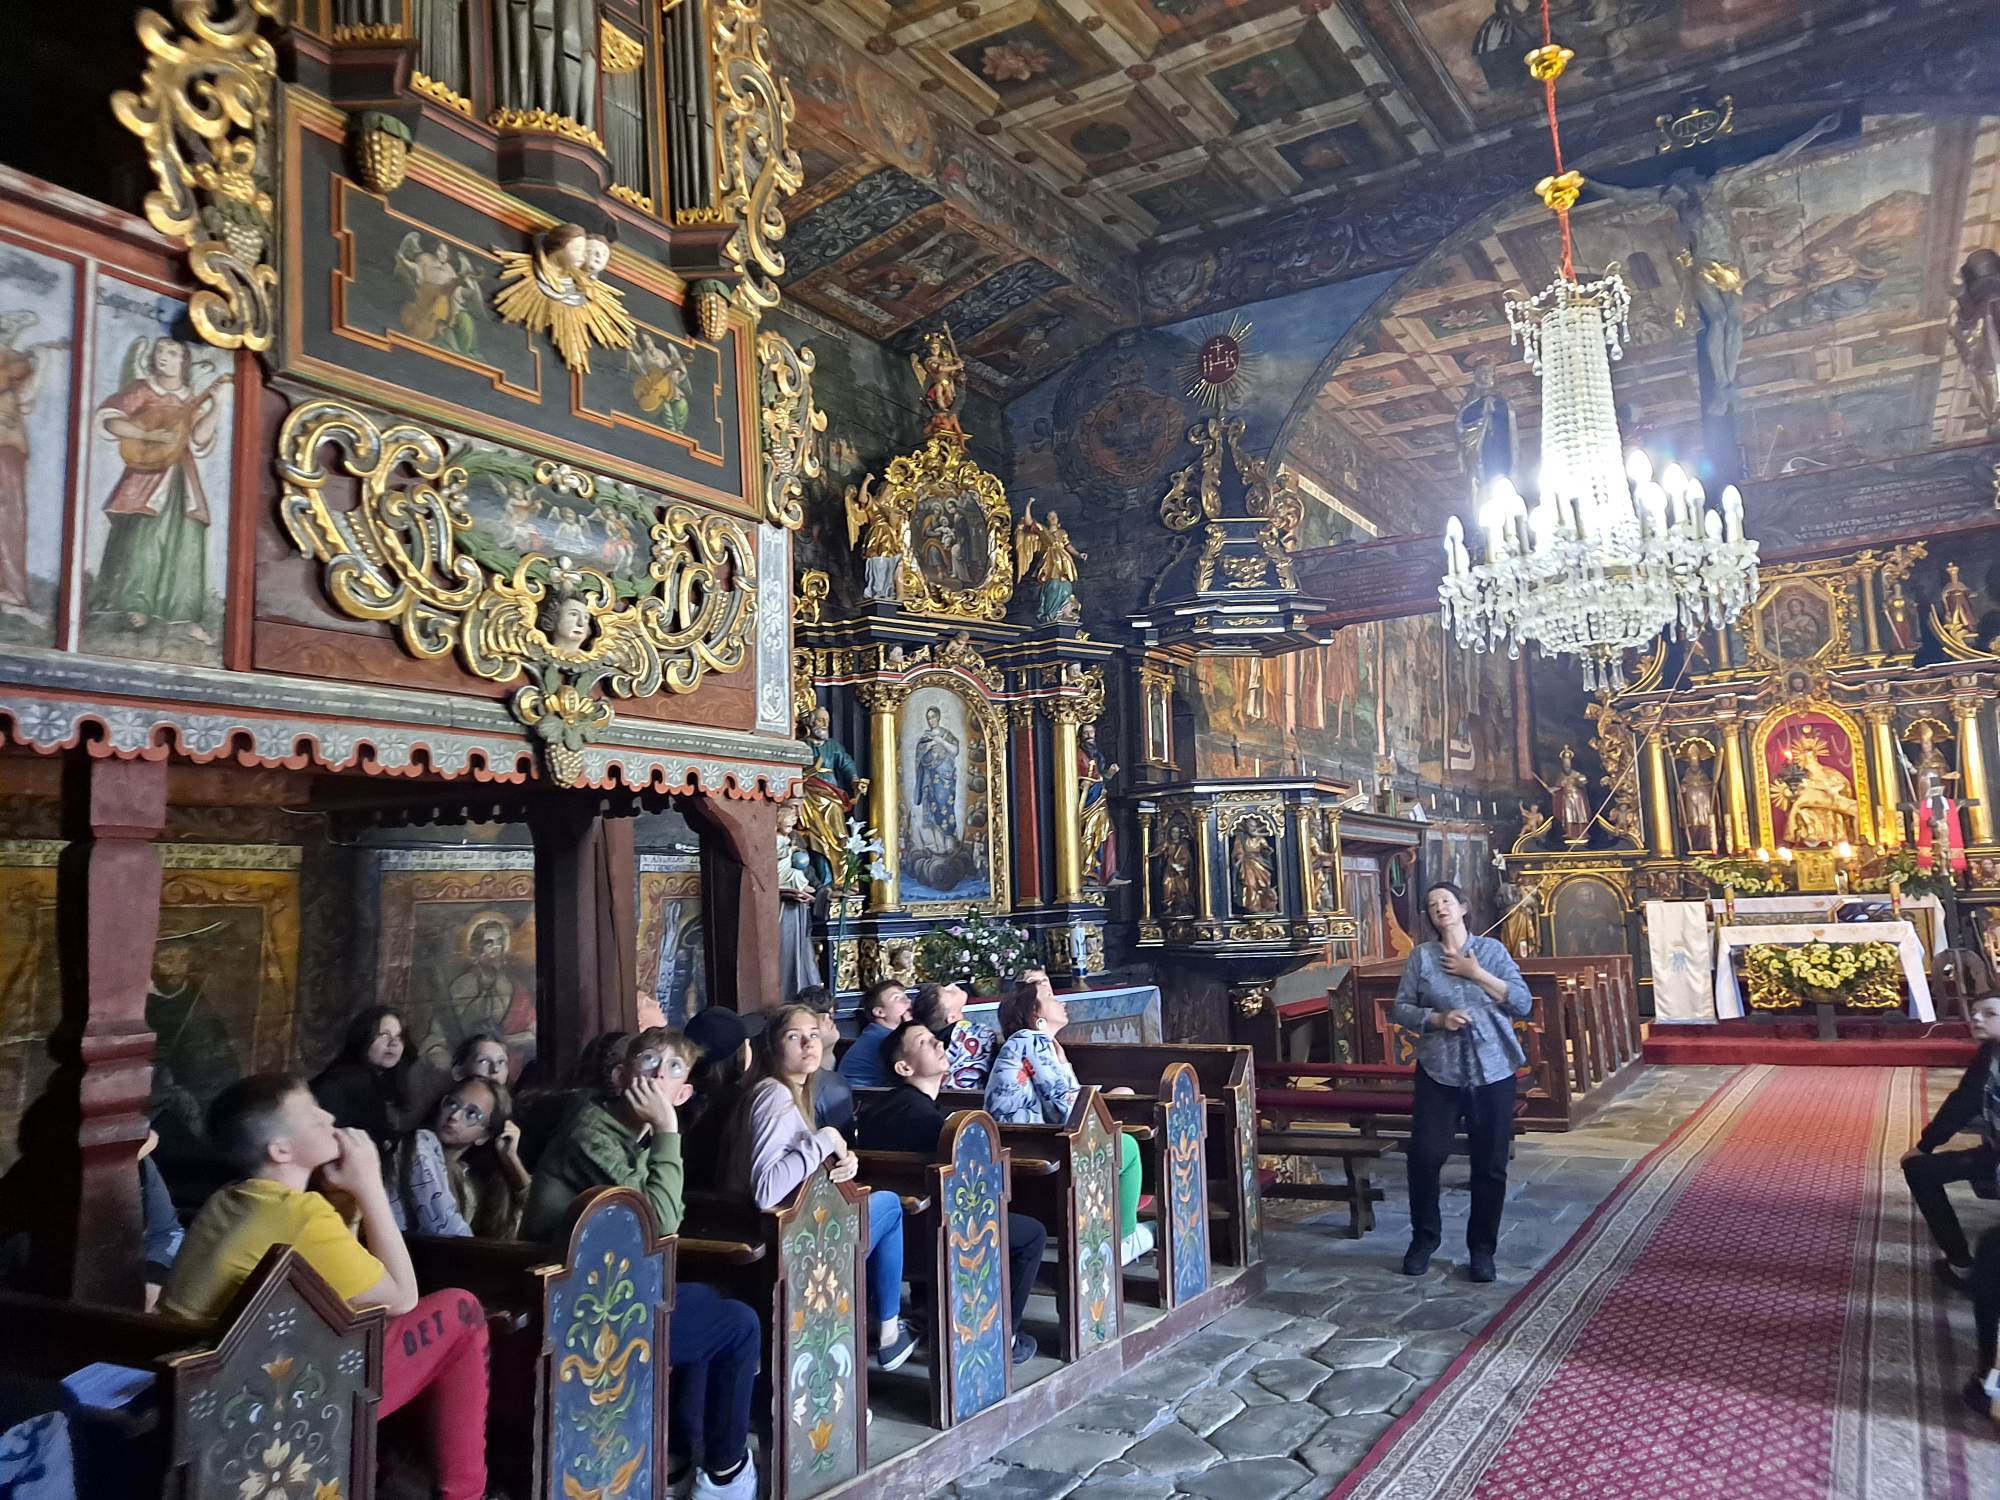 Uczniowie zwiedzają wnętrze zabytkowego kościoła św. Jana Chrzciciela w Orawce, siedzą w ławkach i podziwiają bogate malowidła świątyni, o których opowiada przewodnicza.